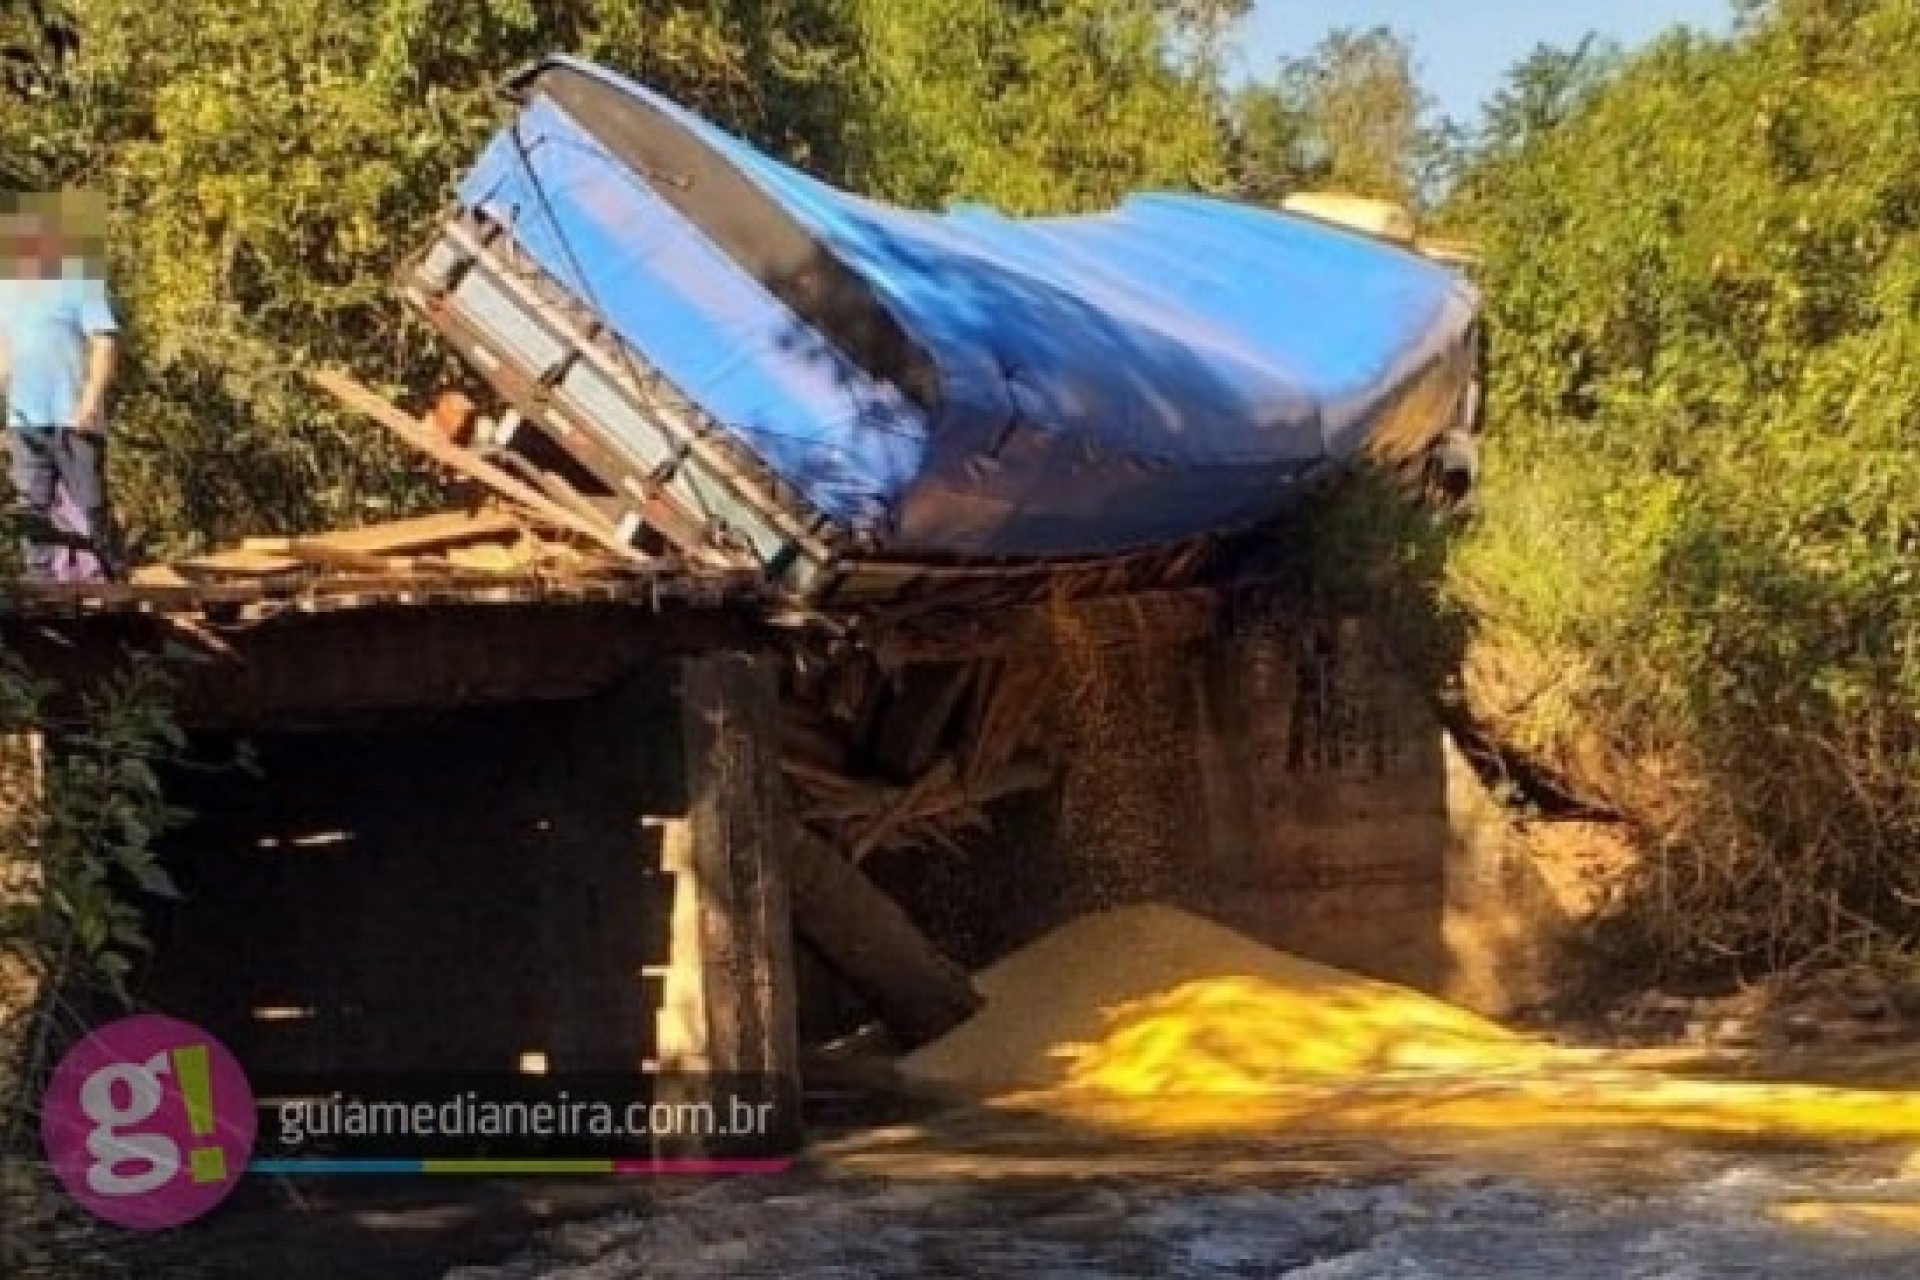 Caminhão quase cai em rio após ponte ceder no interior do município de Medianeira